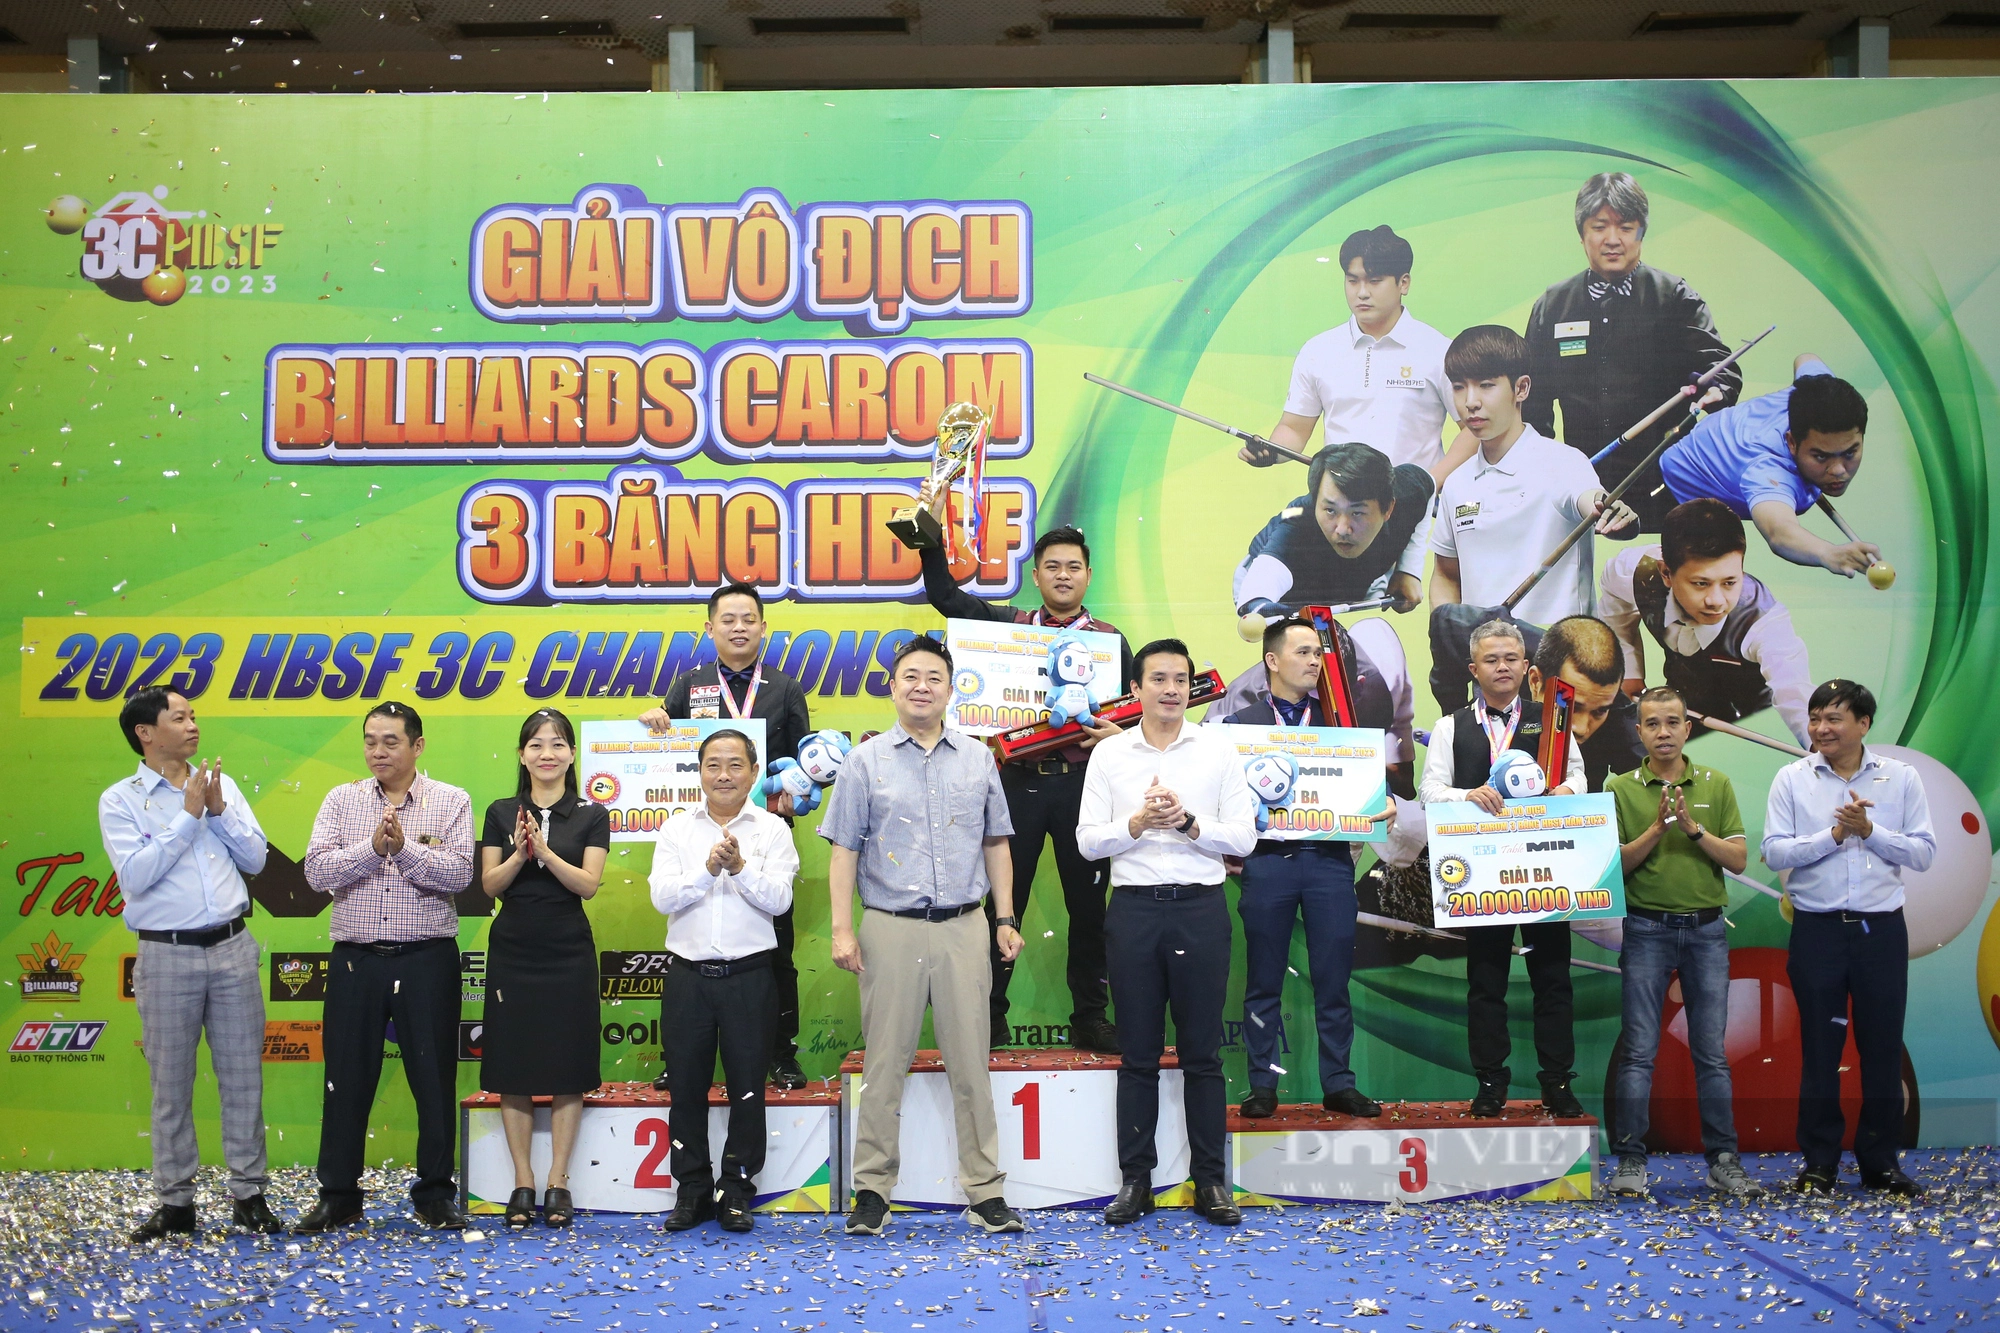 Nhà vô địch SEA Games Nguyễn Trần Thanh Tự lên ngôi tại giải Billiards Carom 3 băng HBSF  - Ảnh 4.